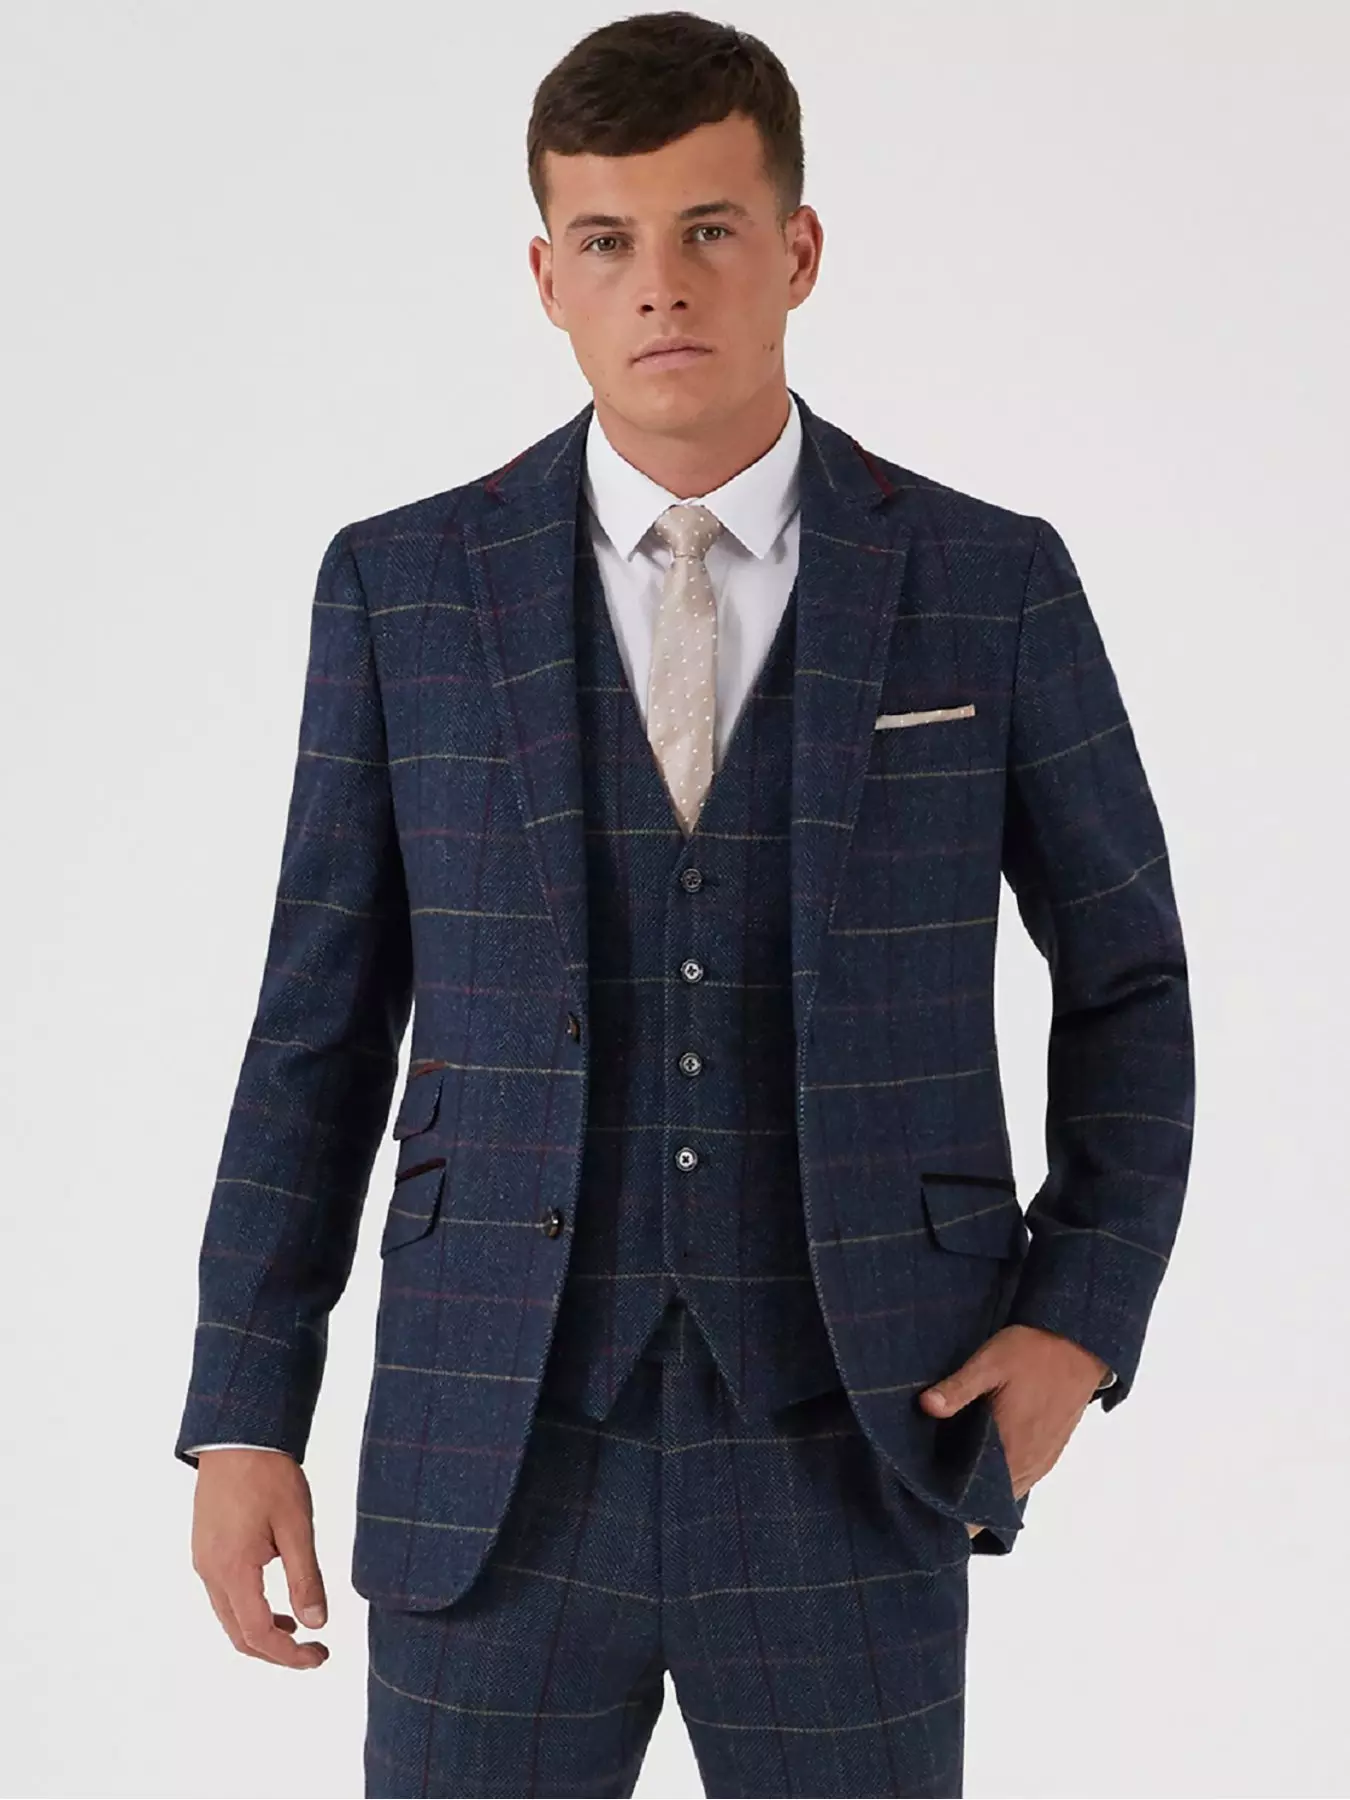 Shop Men's Suits & Blazers, Suits For Men